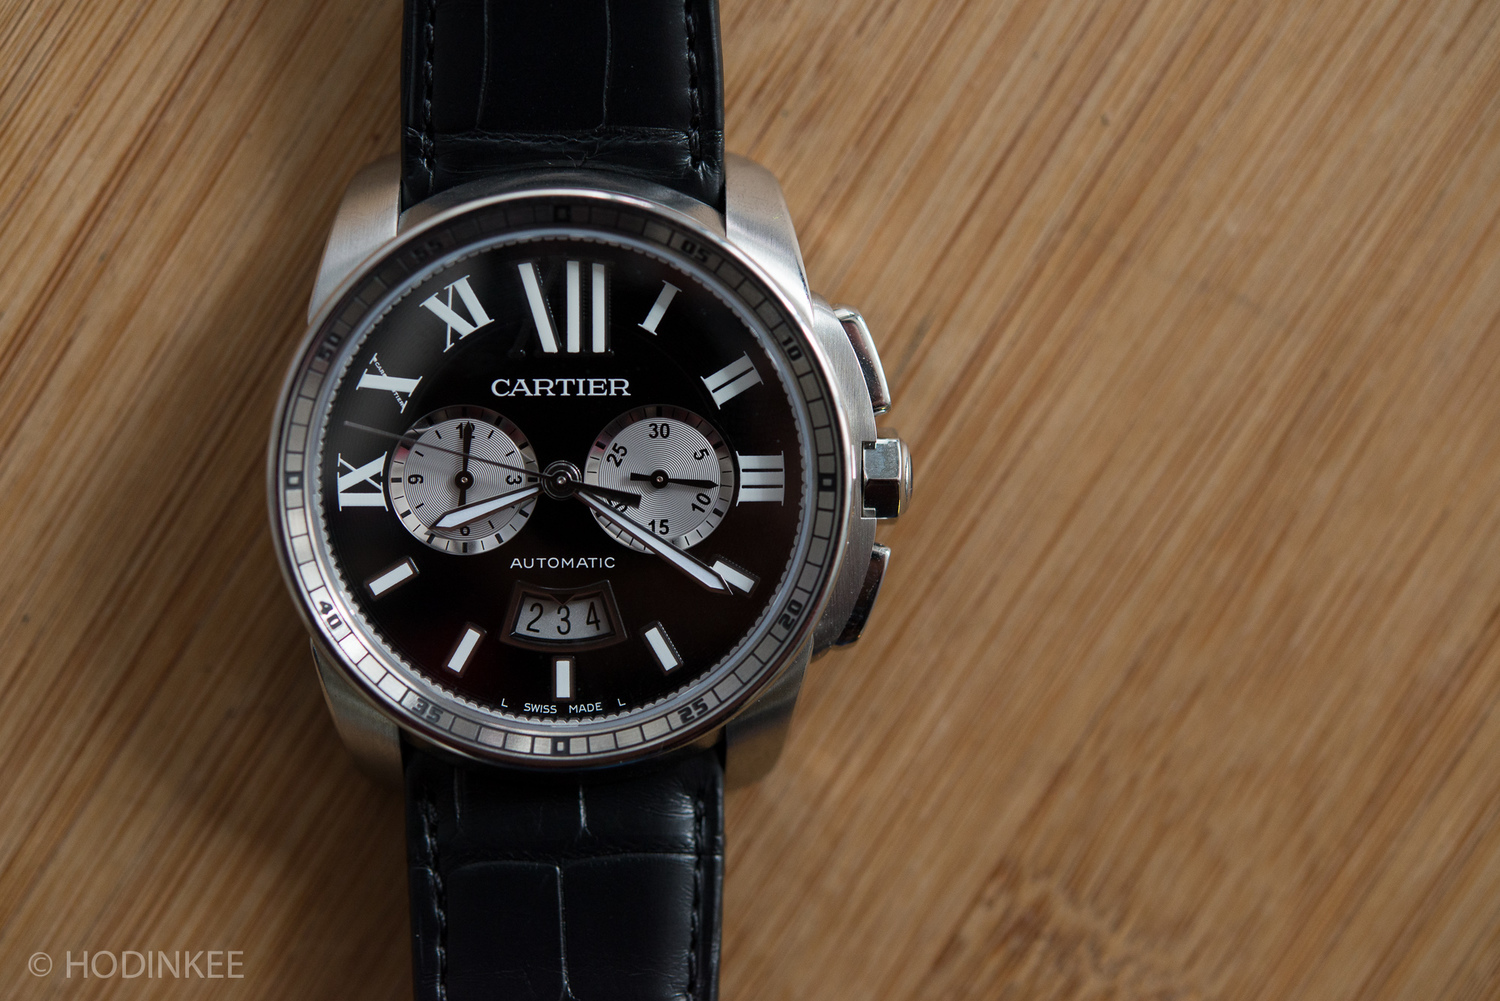 calibre de cartier chronograph watch review